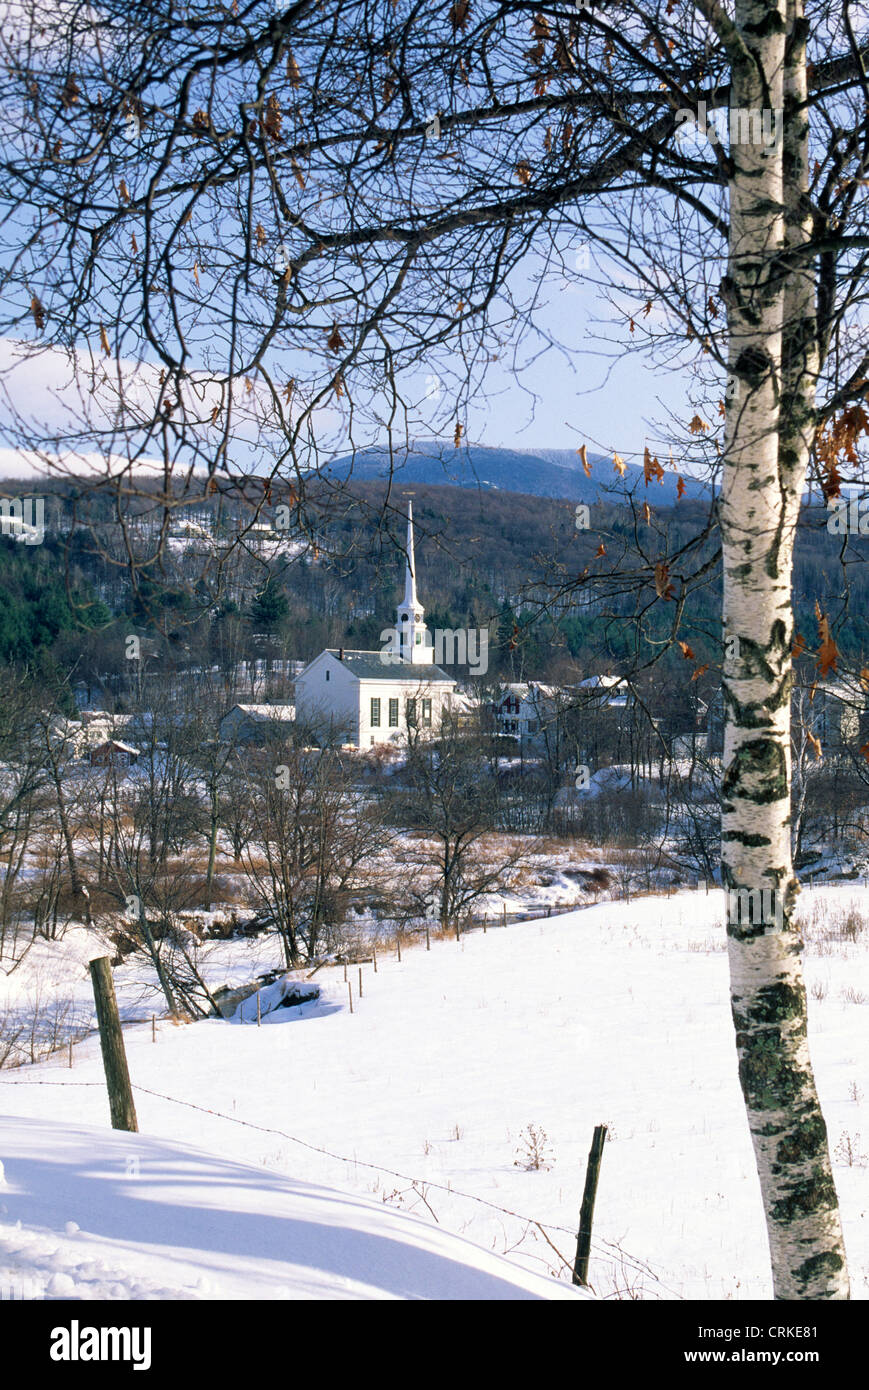 Il punto di riferimento bianco Stowe chiesa della Comunità con il suo alto campanile spicca in questa scena invernale di Stowe, Vermont, una piccola città del New England, STATI UNITI D'AMERICA. Foto Stock